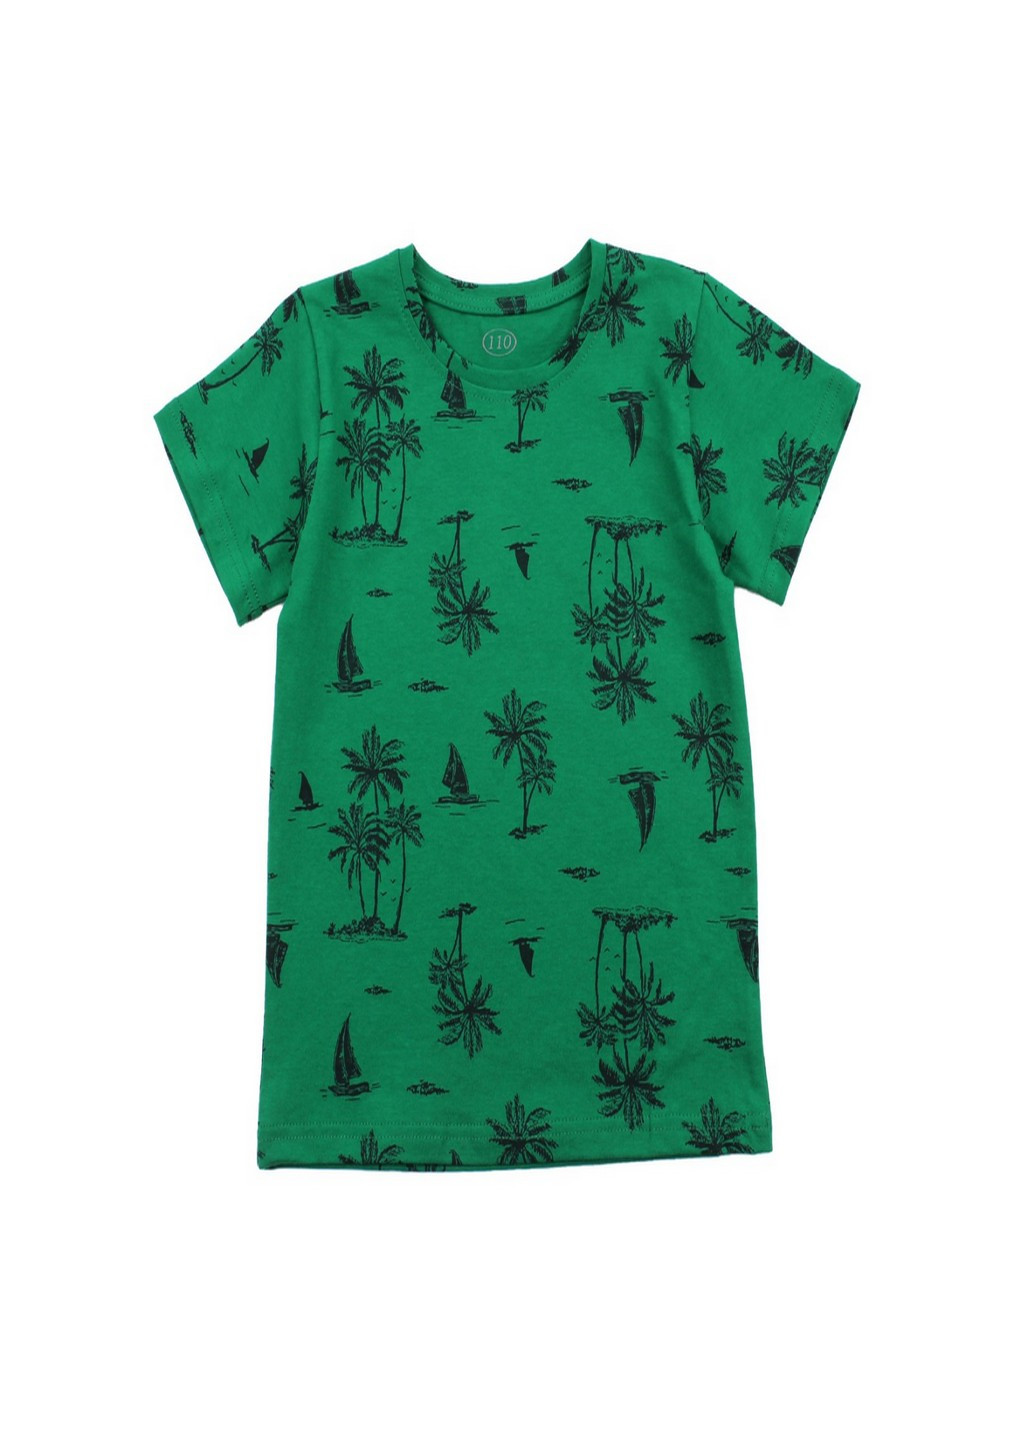 Зеленая летняя футболка для мальчика (пальмы, корабль) Фламинго Текстиль